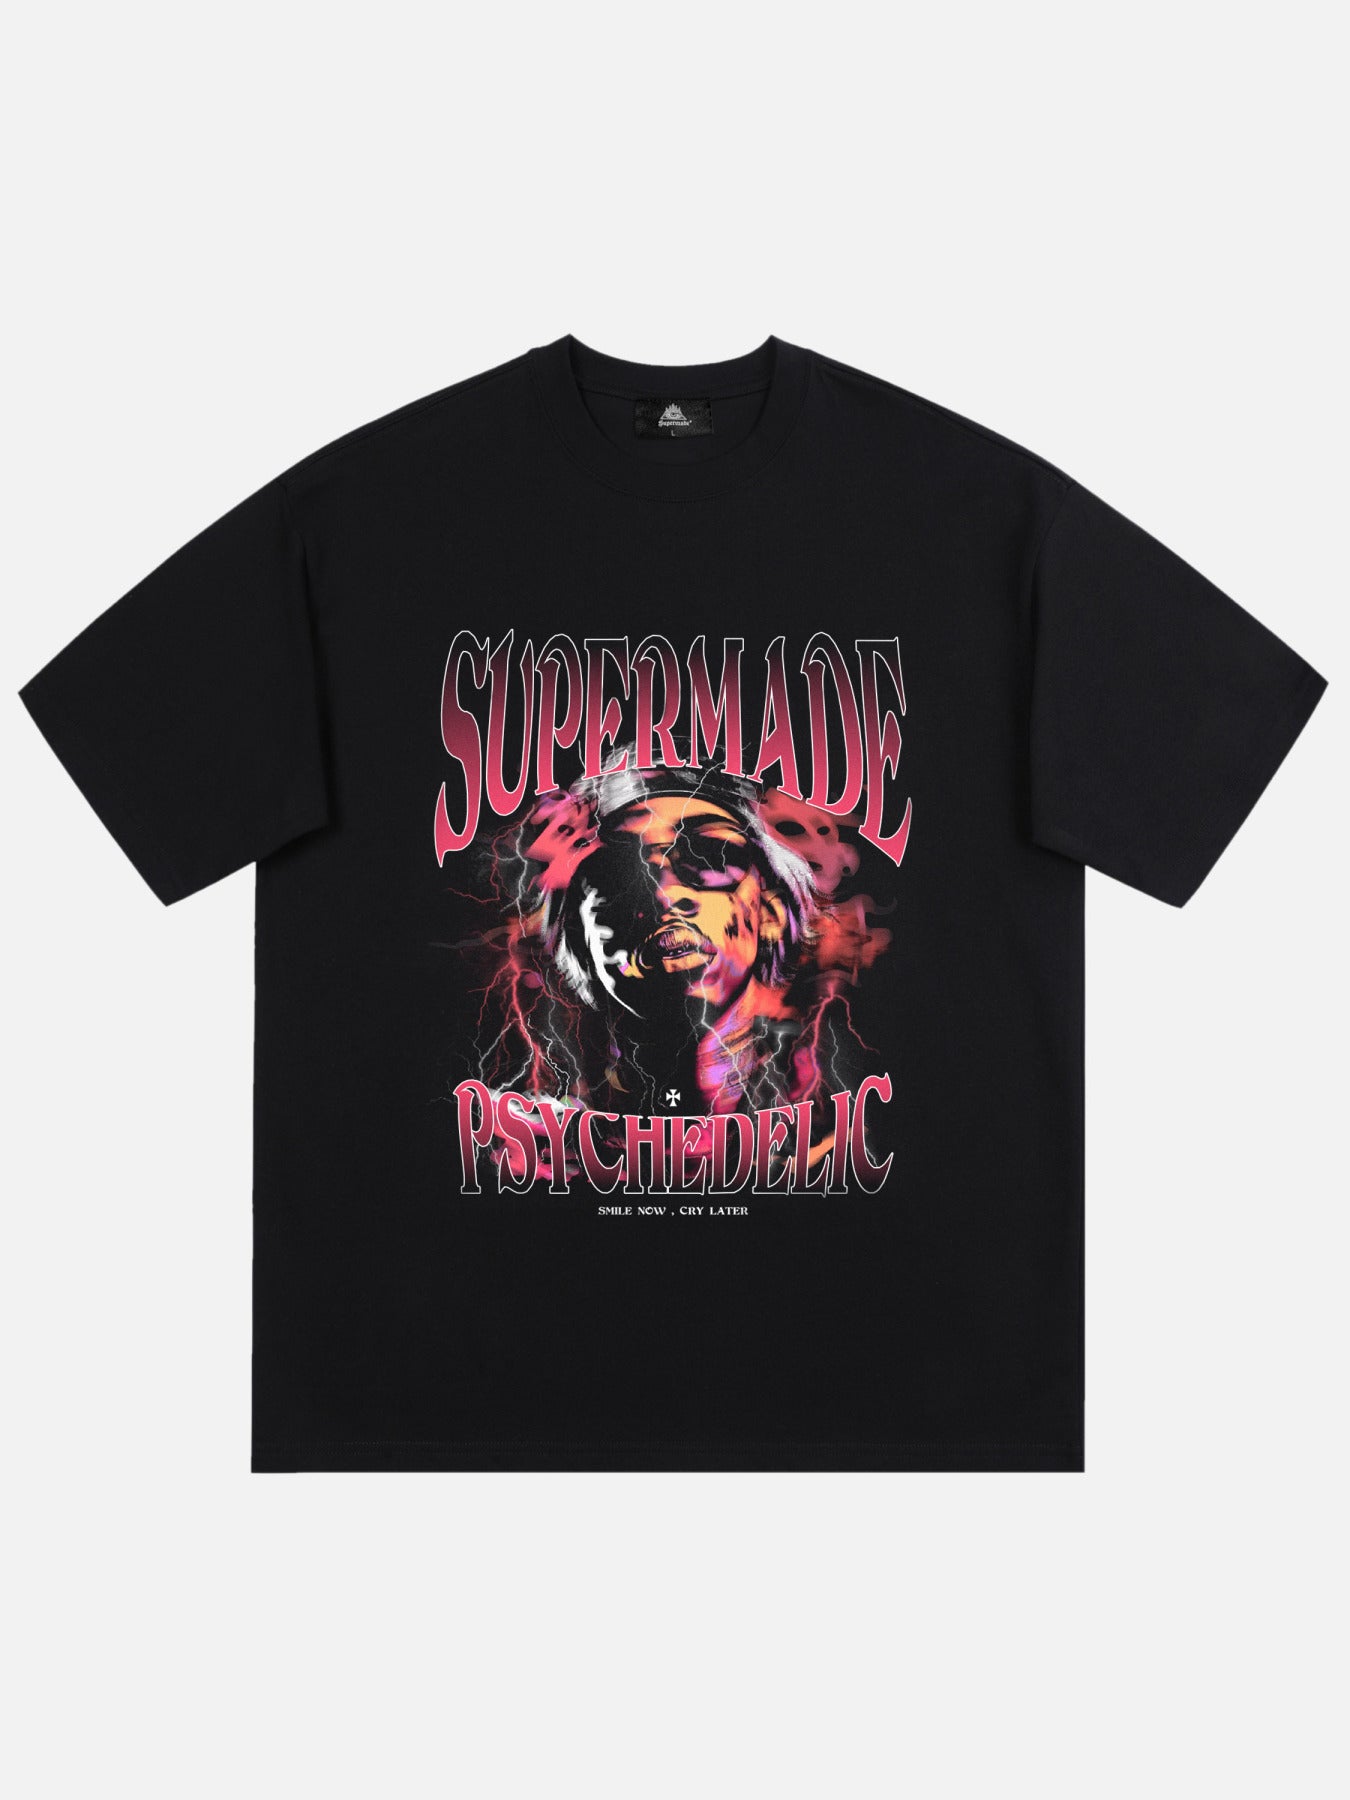 The Supermade Retro Hip Hop Print T-shirt